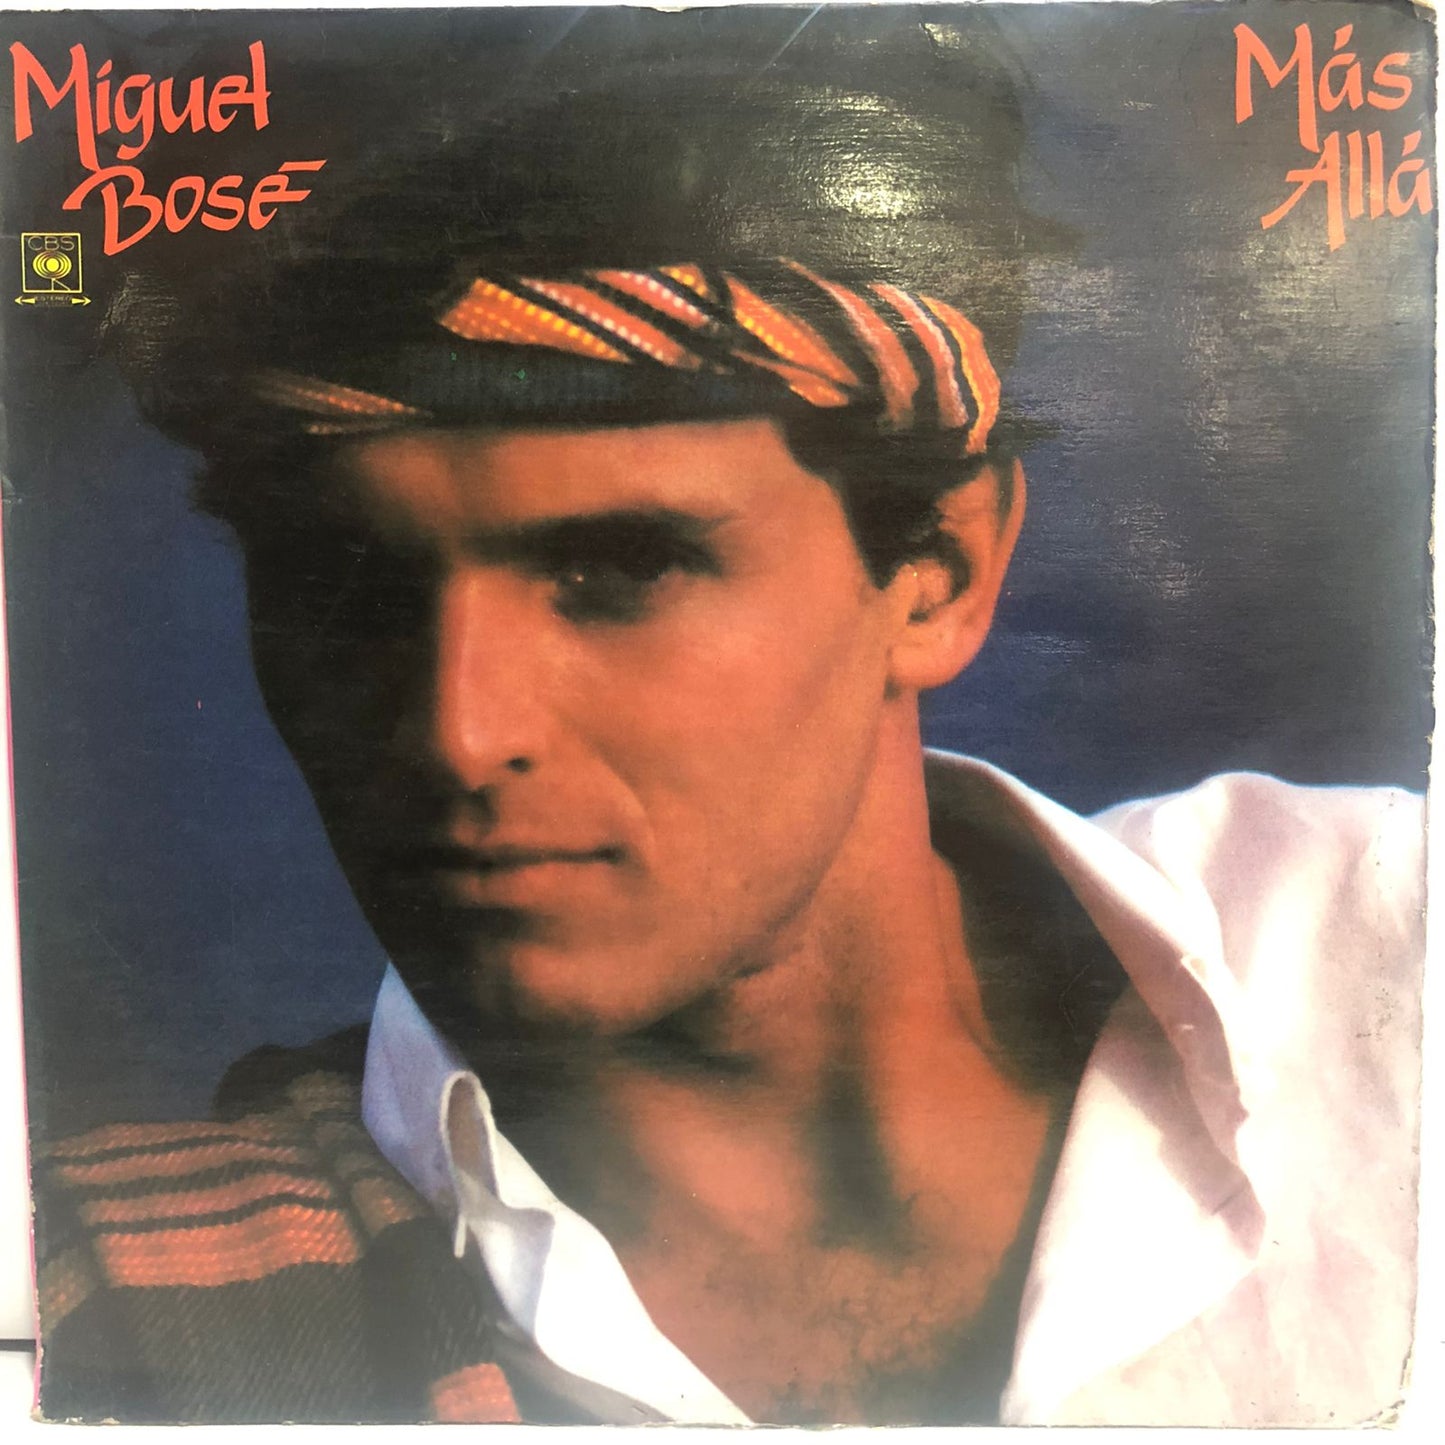 MIGUEL BOSE - MAS ALLA LP